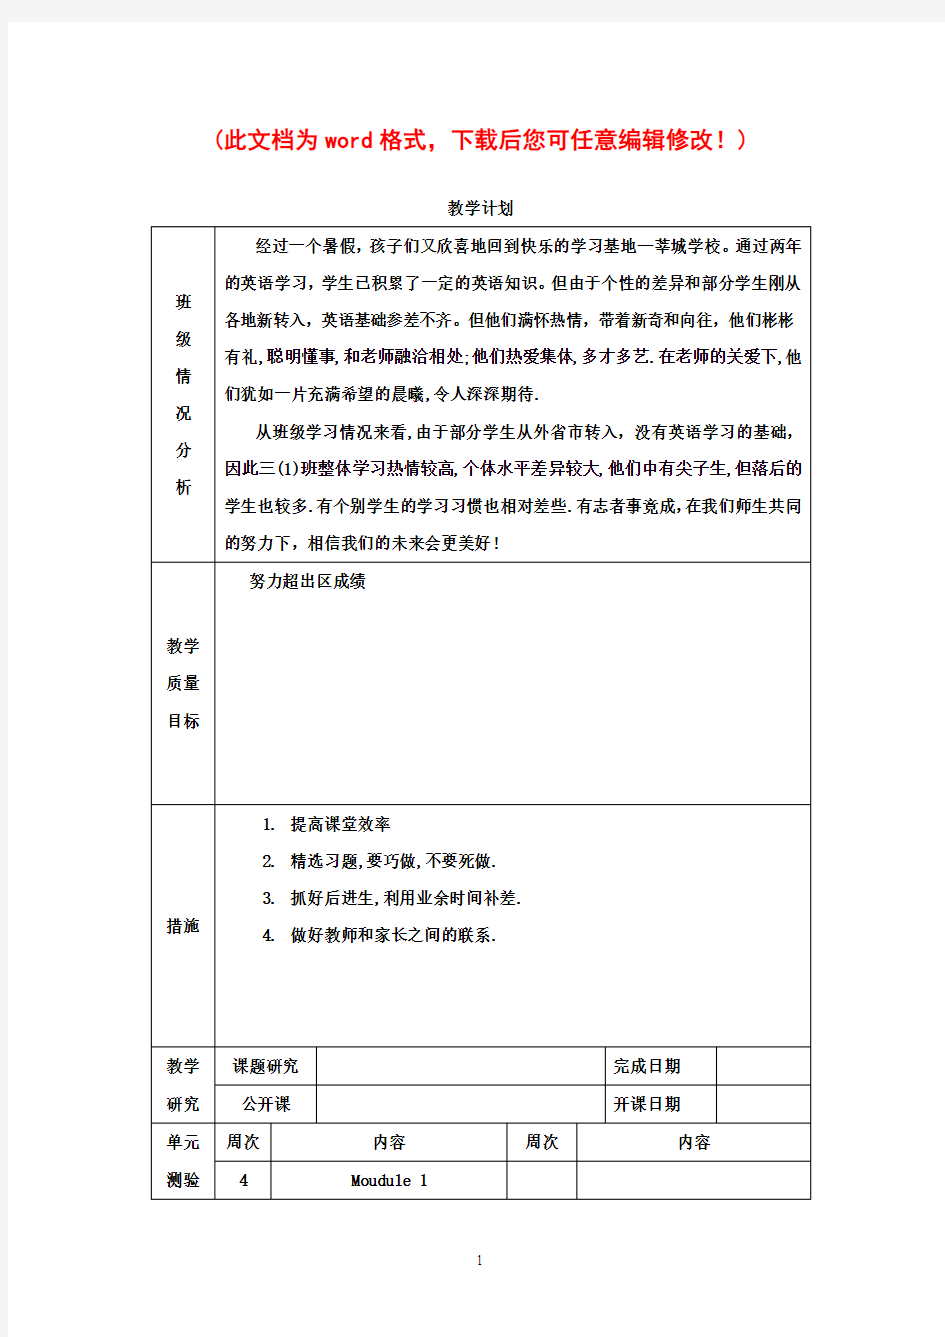 【完整打印版】上海沪教版牛津英语A小学三年级上册教案备课图文